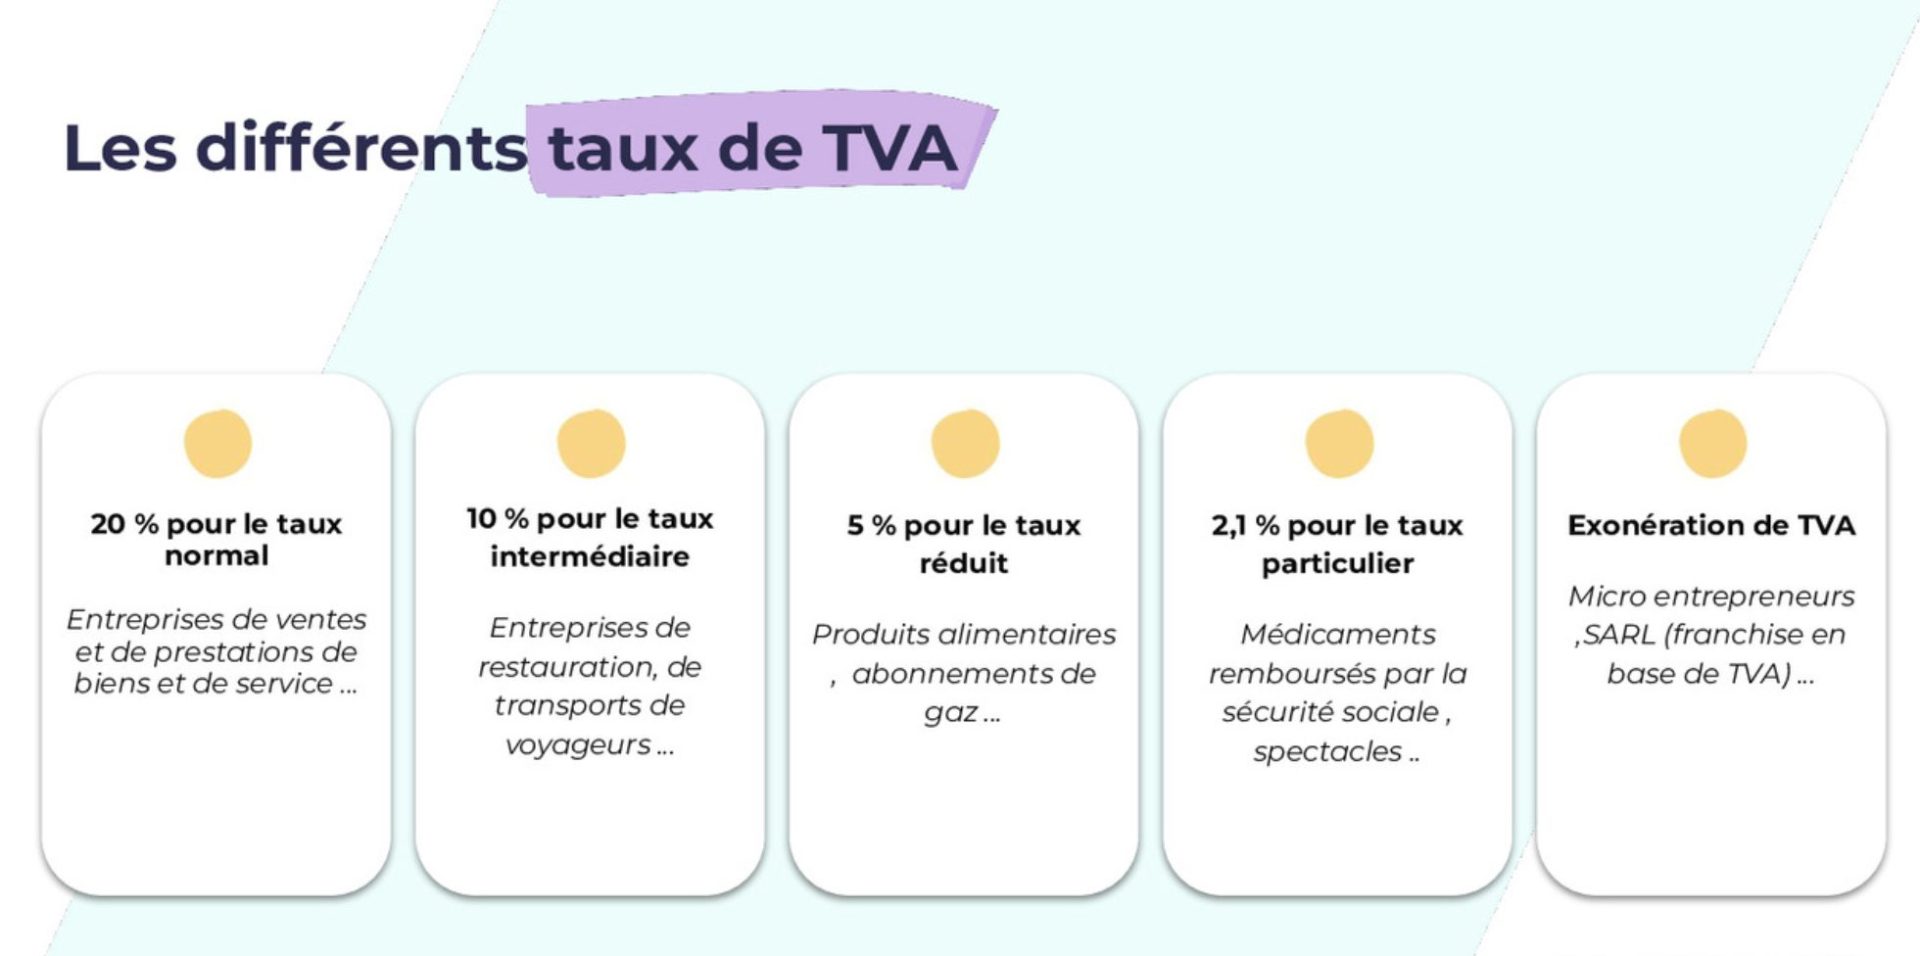 Les différents taux de TVA existants. 